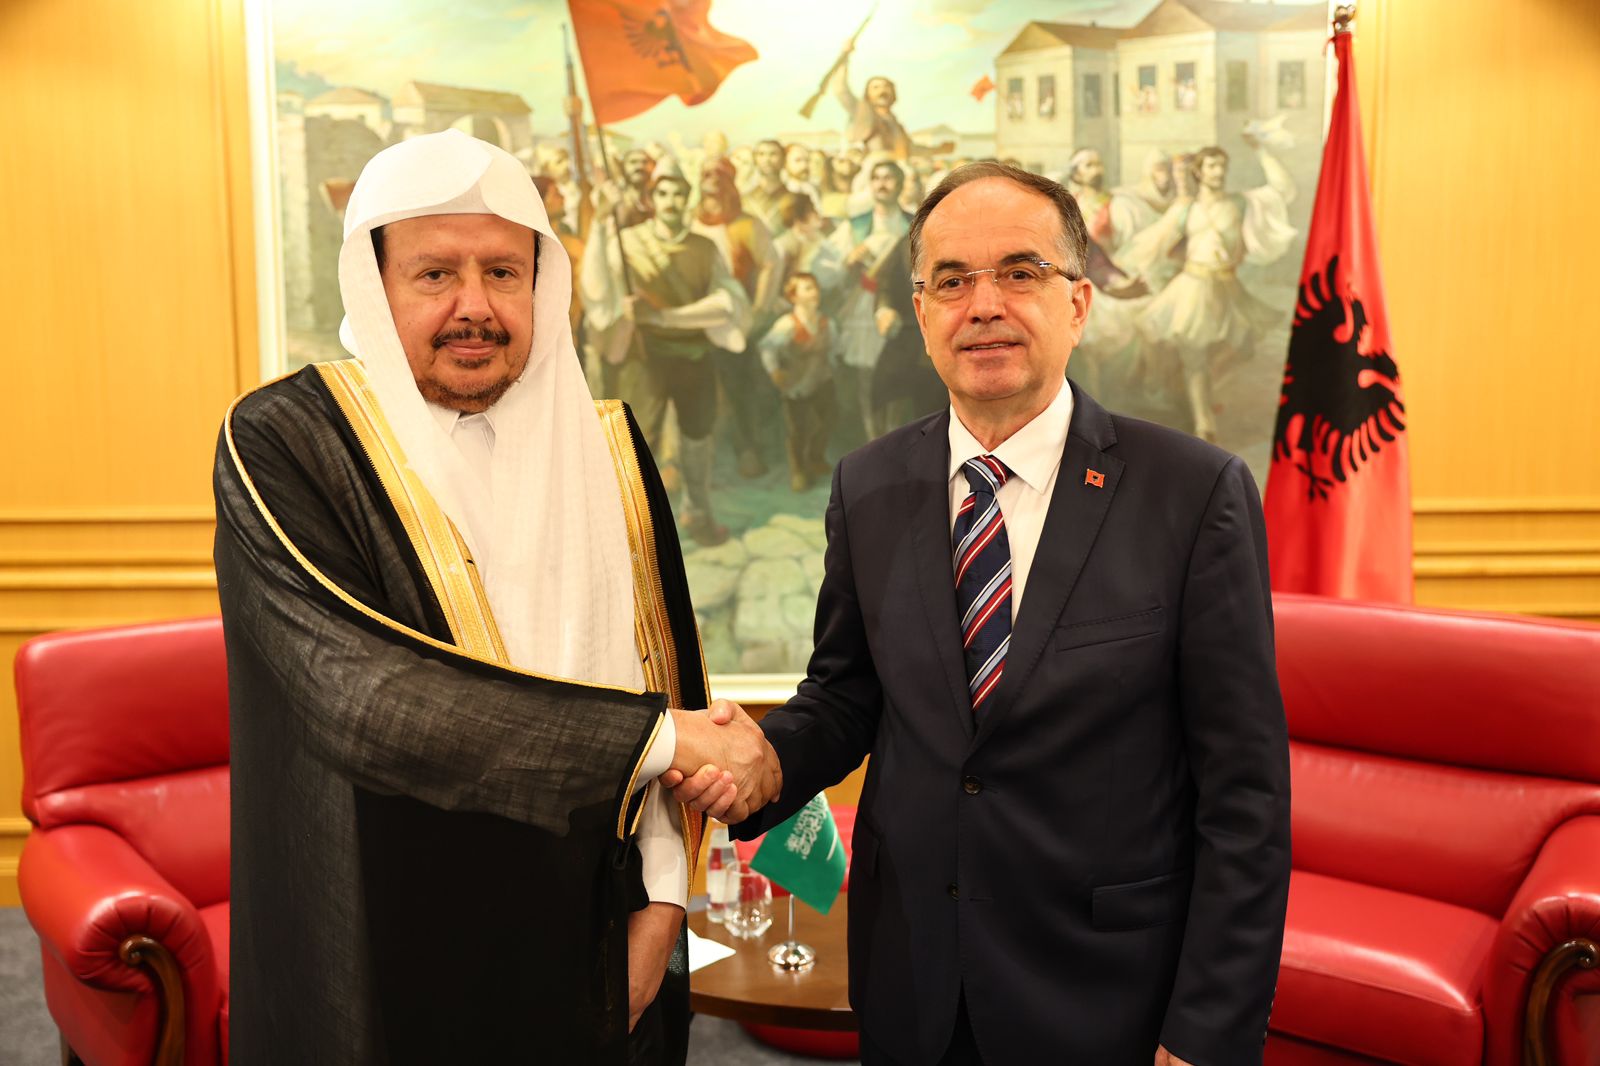 Presidenti Begaj pret në takim kryeparlamentarin e Mbretërisë së Arabisë Saudite, ja për çfarë biseduan